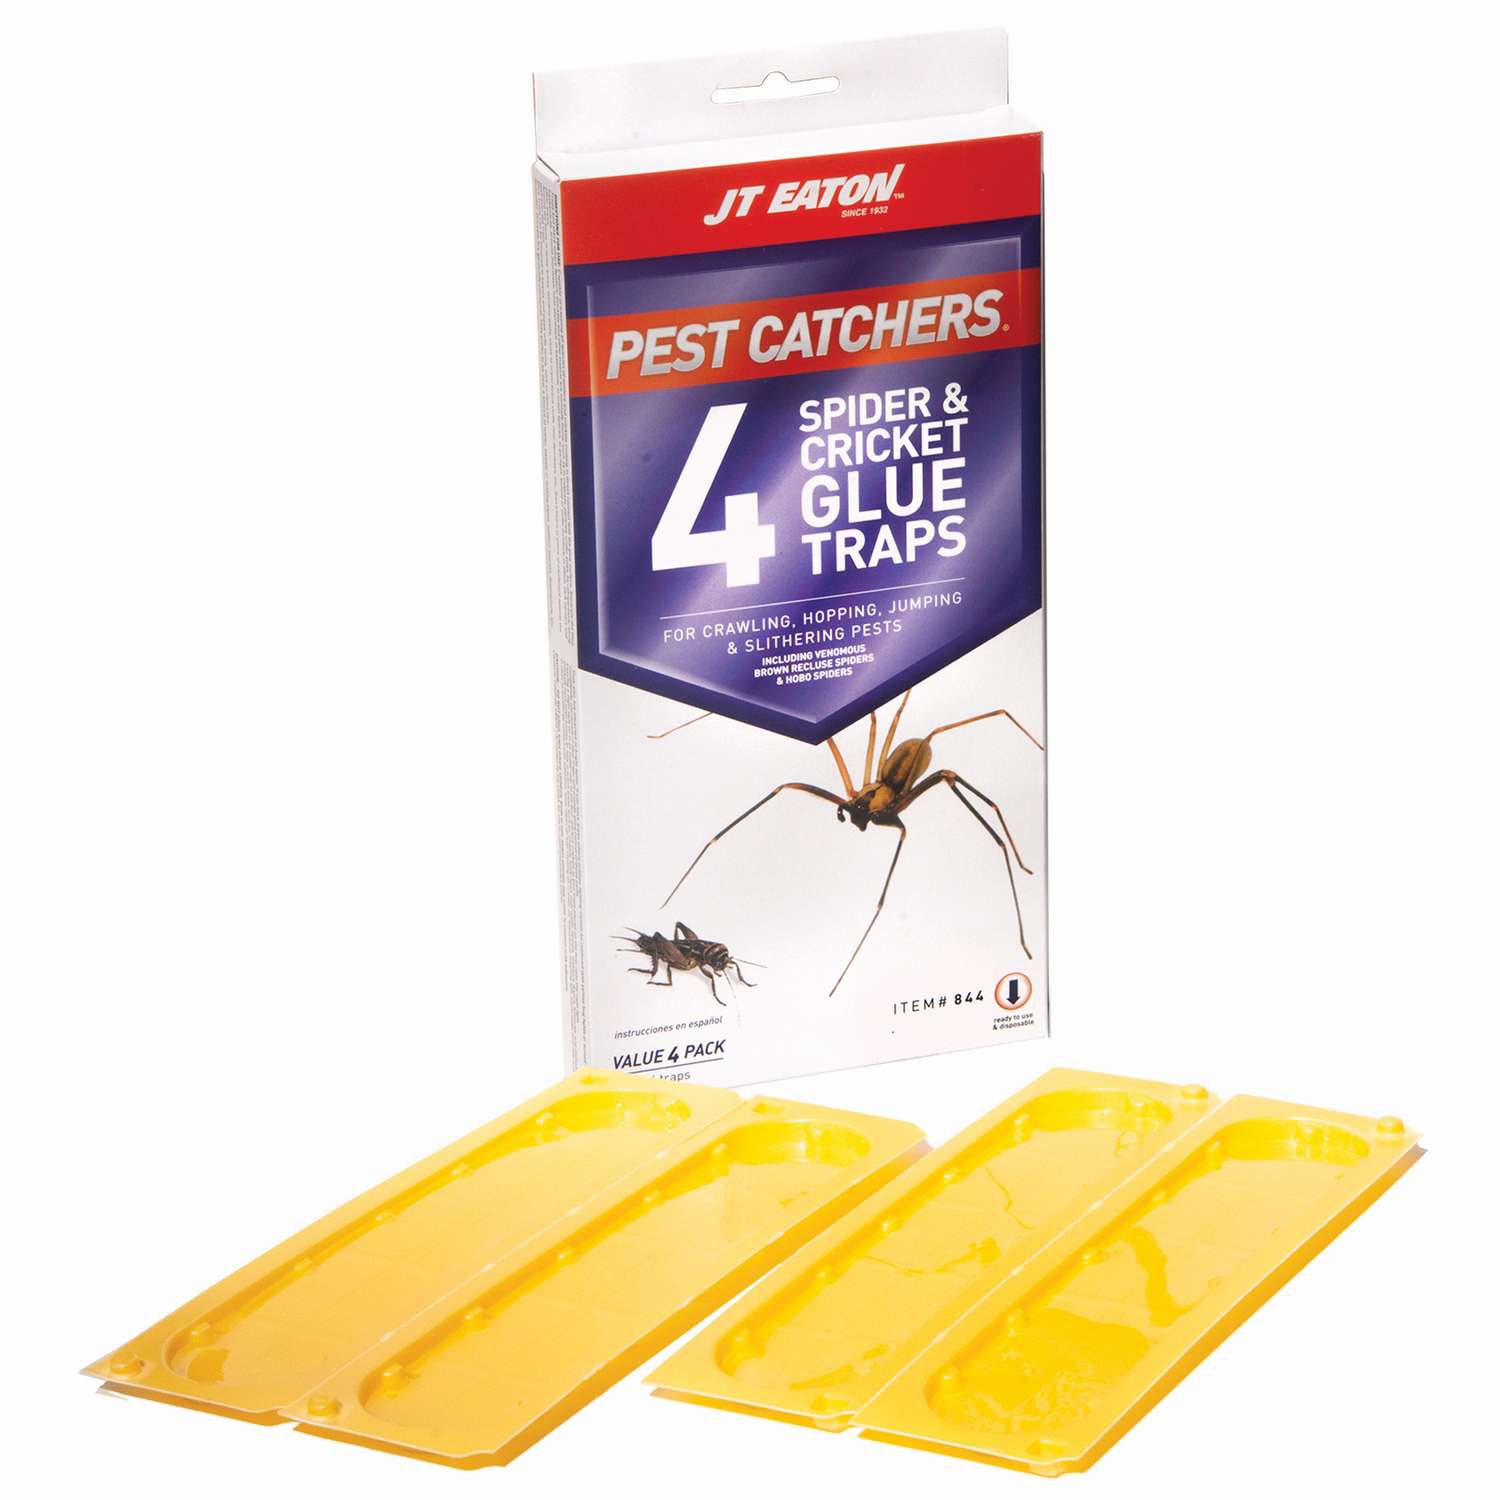 JT Eaton Pest Catchers Glue Trap 4 pk - Ace Hardware